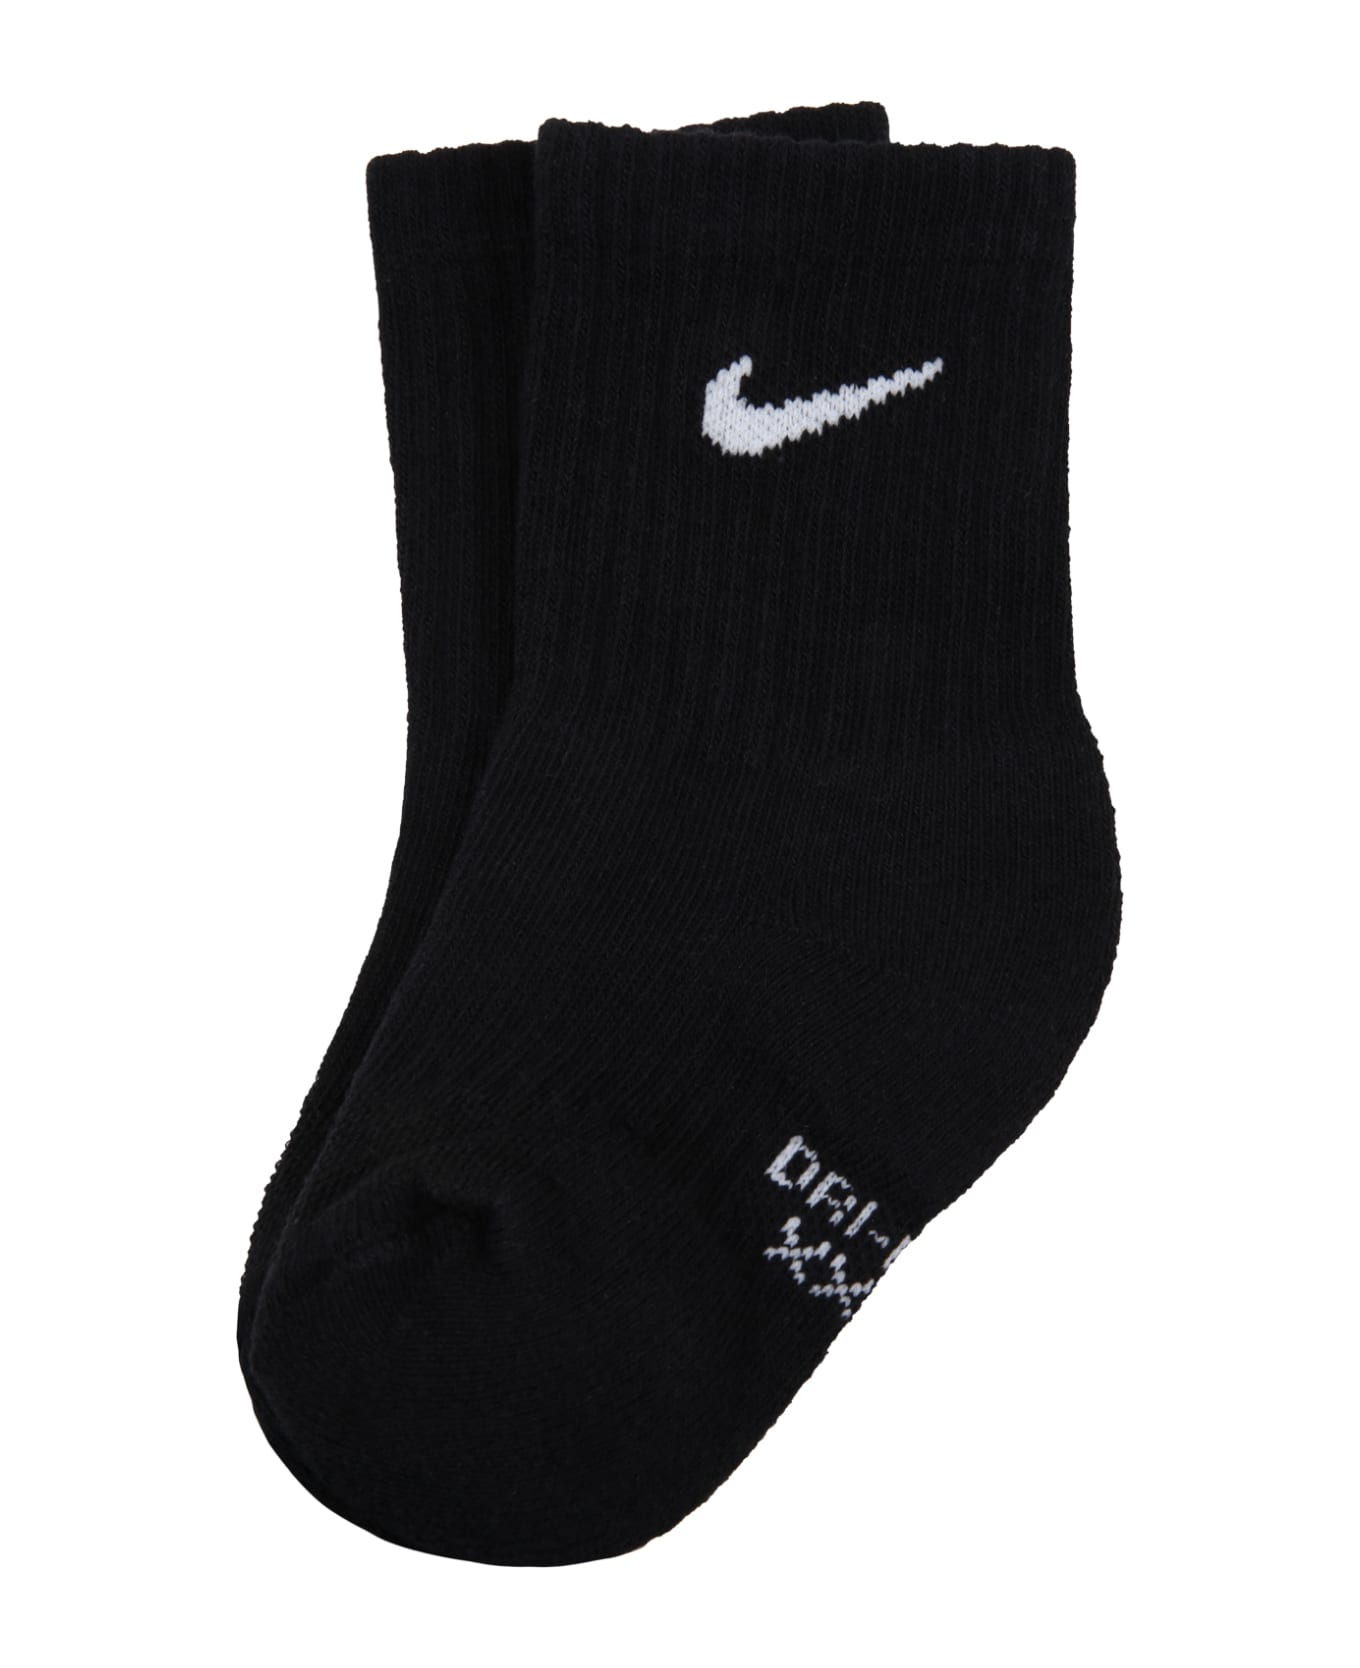 Nike Black Socks For Kids With White Logo - Black